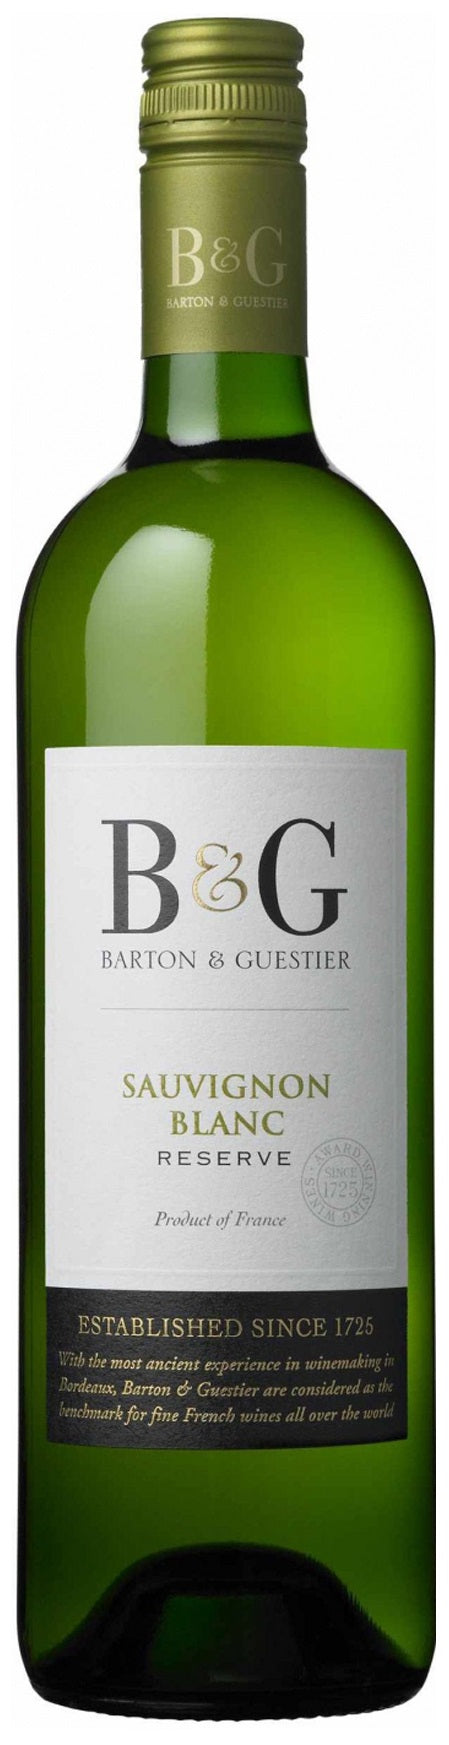 Barton & Guestier Sauvignon Blanc 2016